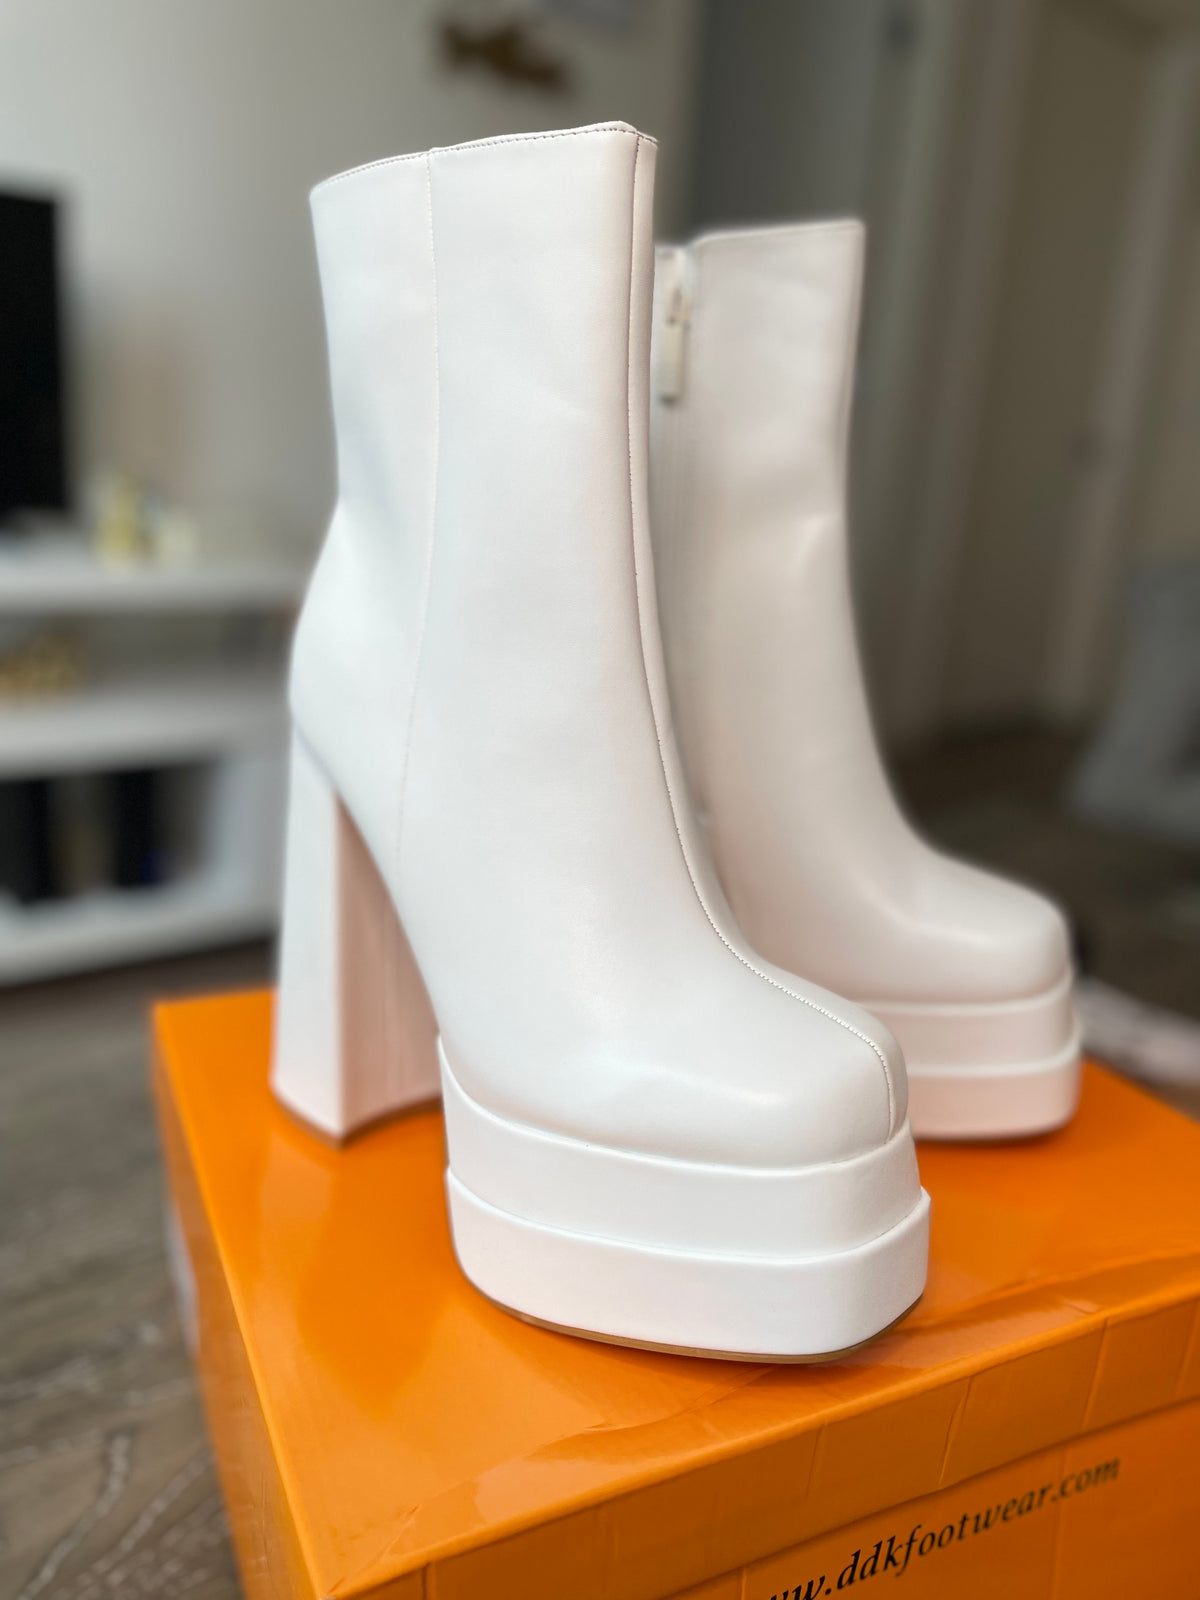 women's platform heel boots | Platform heel boots